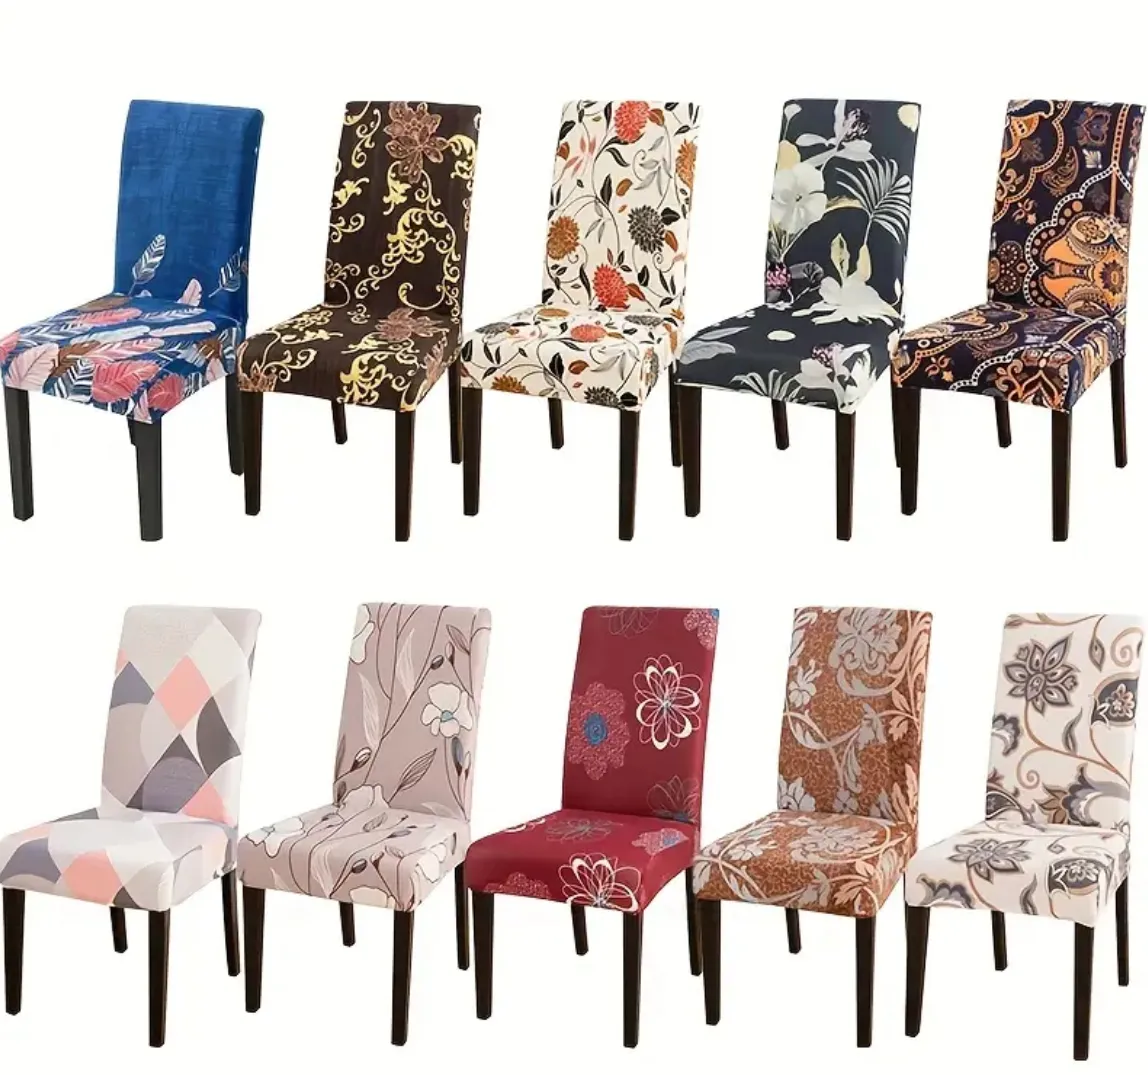 4 parçalı çeşitli sandalye slipcover seti - yemek odası sandalyeleri için şık gerilebilir koltuk kapakları, zarif çiçek ve desen tasarımları